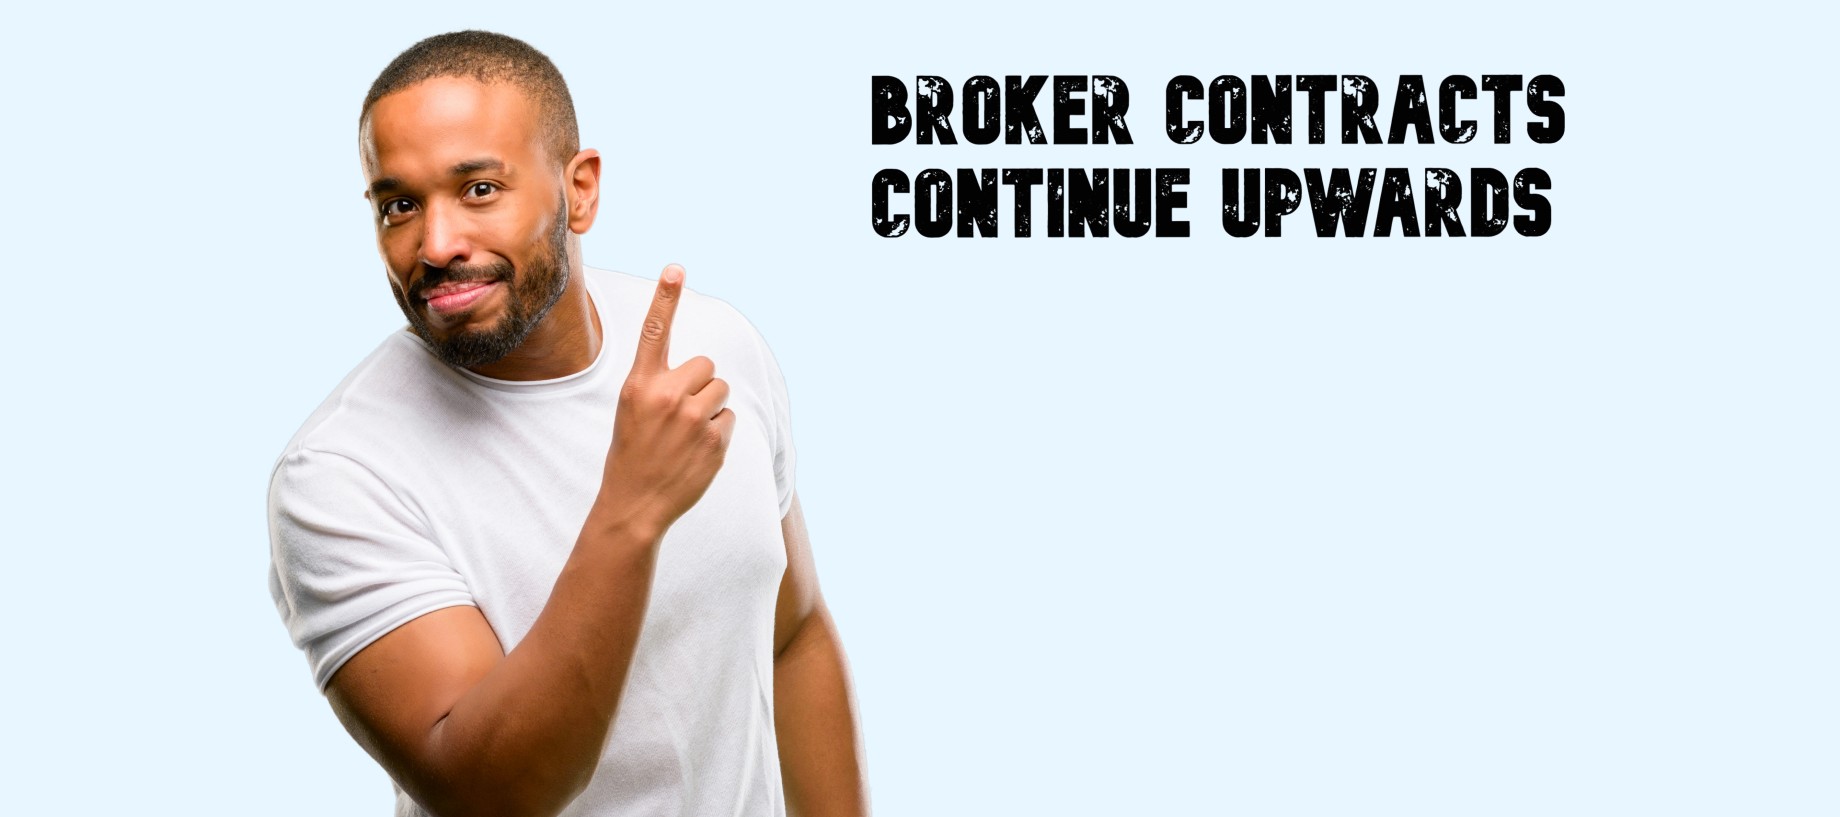 Broker contracts continue upwards